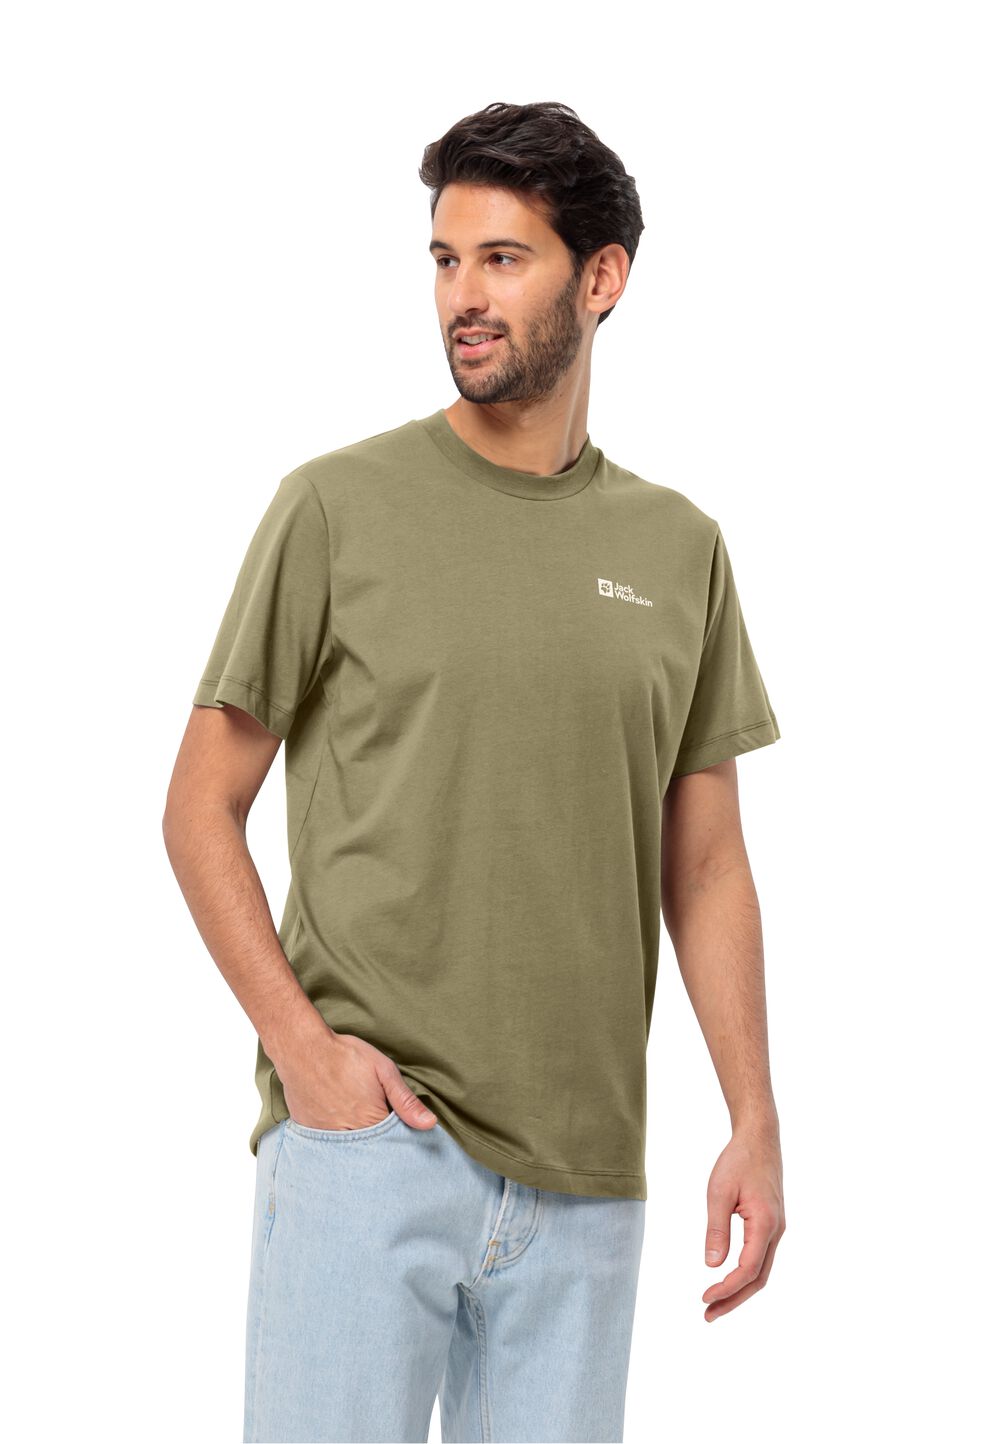 Jack Wolfskin Herren T-shirt aus Bio-Baumwolle Essential T-Shirt Men M braun bay leaf von Jack Wolfskin